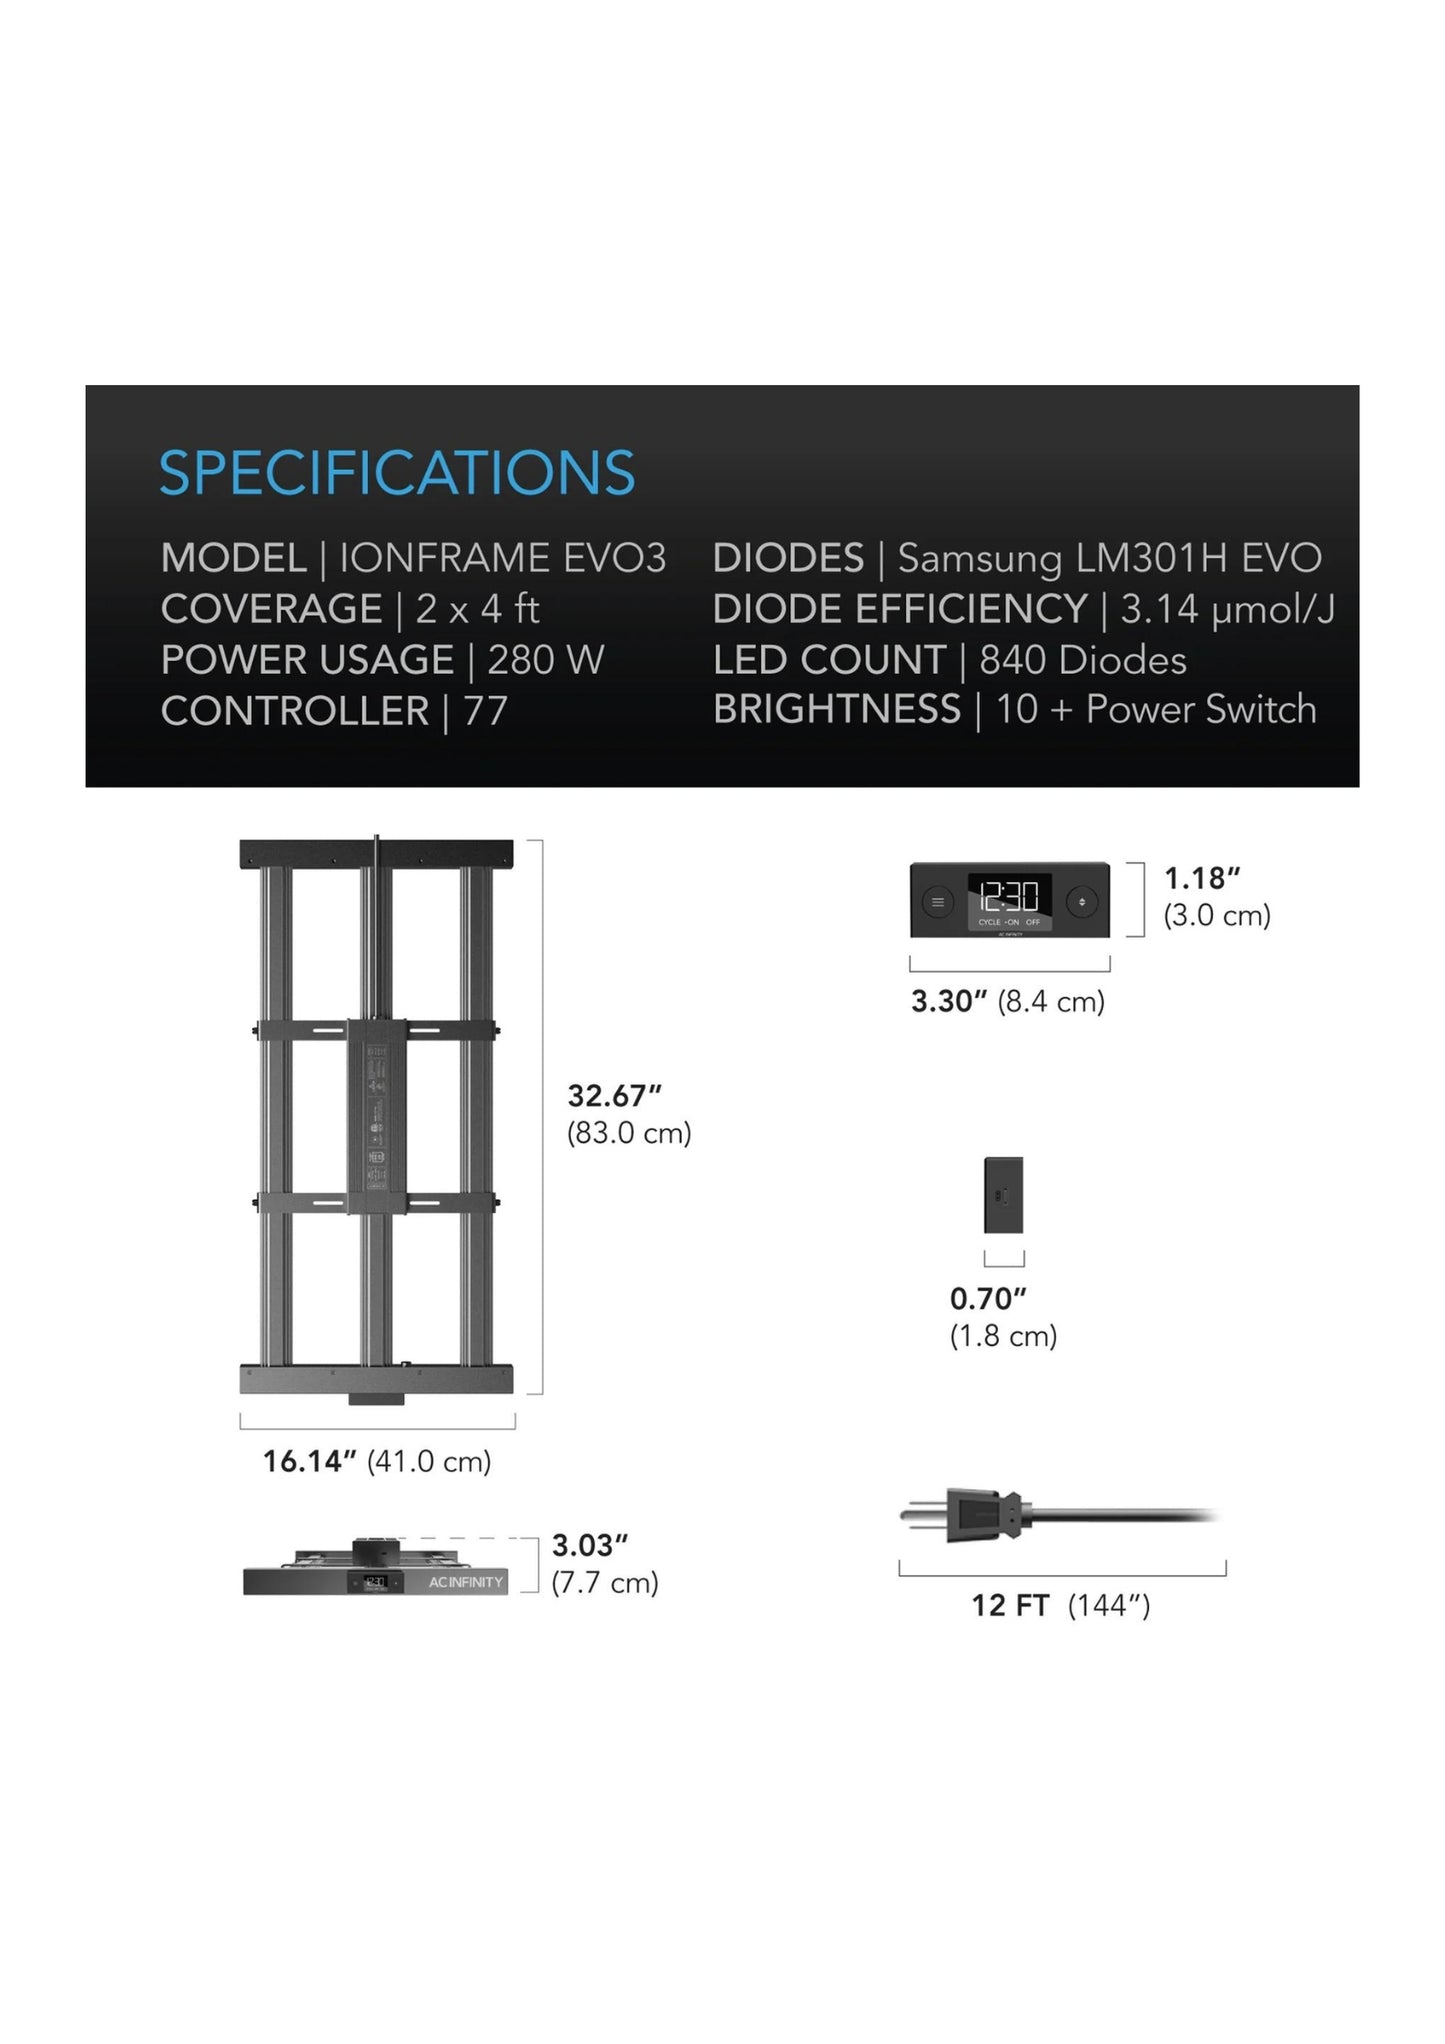 IONFRAME EVO3, Samsung LM301H EVO kommerzielles LED-Wachstumslicht, 280 W, 2 x 4 Fuß